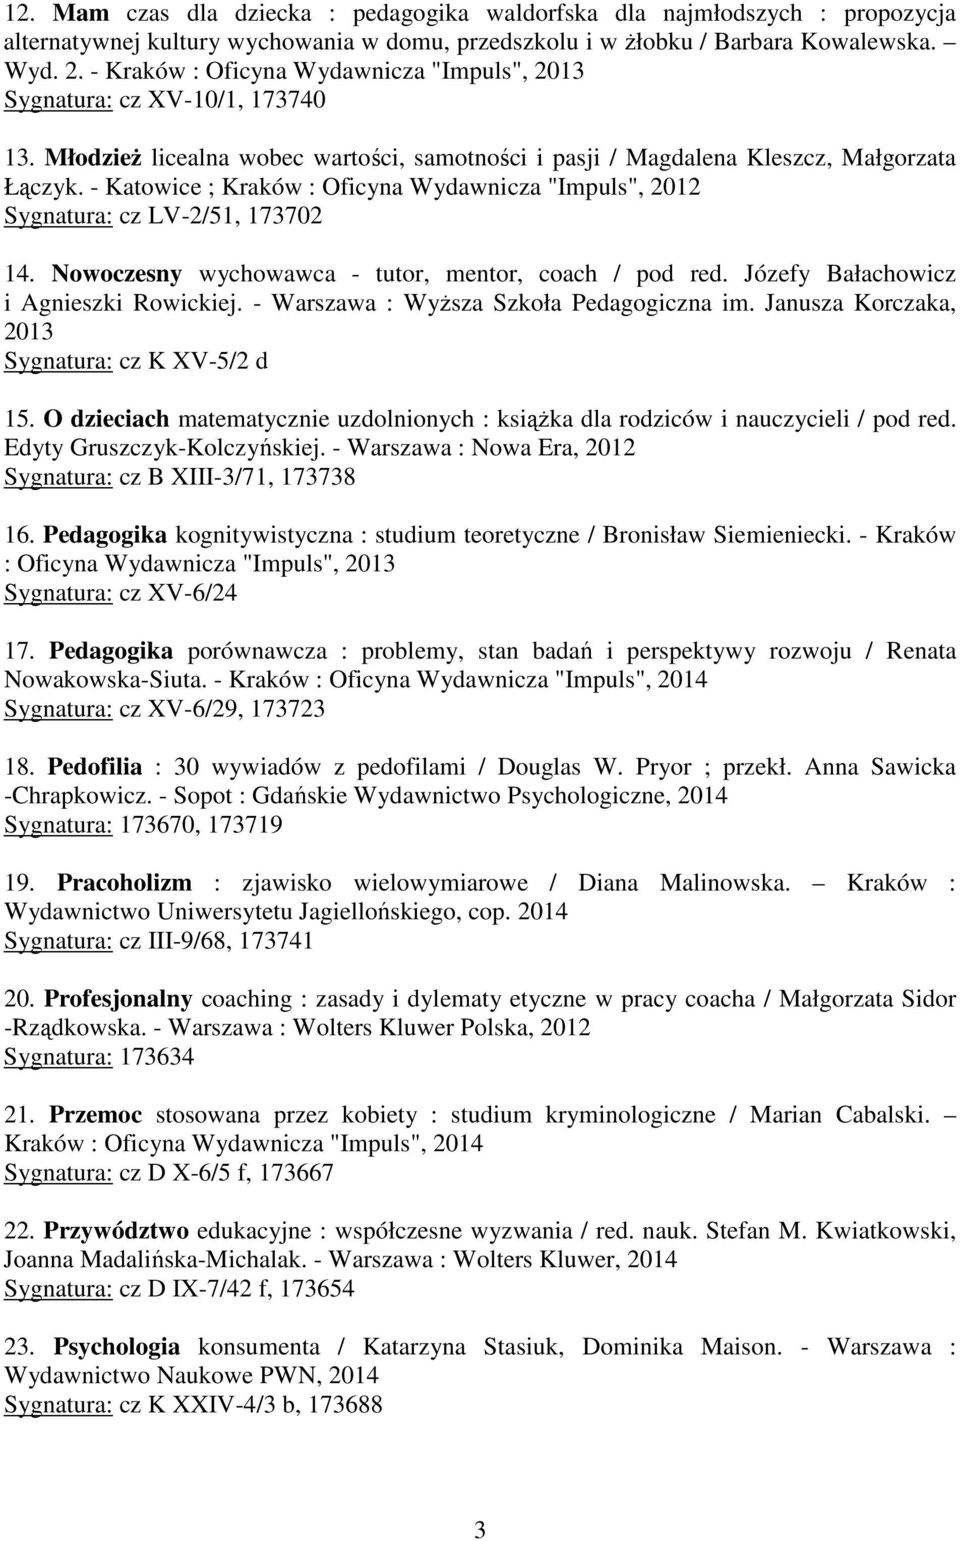 - Katowice ; Kraków : Oficyna Wydawnicza "Impuls", 2012 Sygnatura: cz LV-2/51, 173702 14. Nowoczesny wychowawca - tutor, mentor, coach / pod red. Józefy Bałachowicz i Agnieszki Rowickiej.